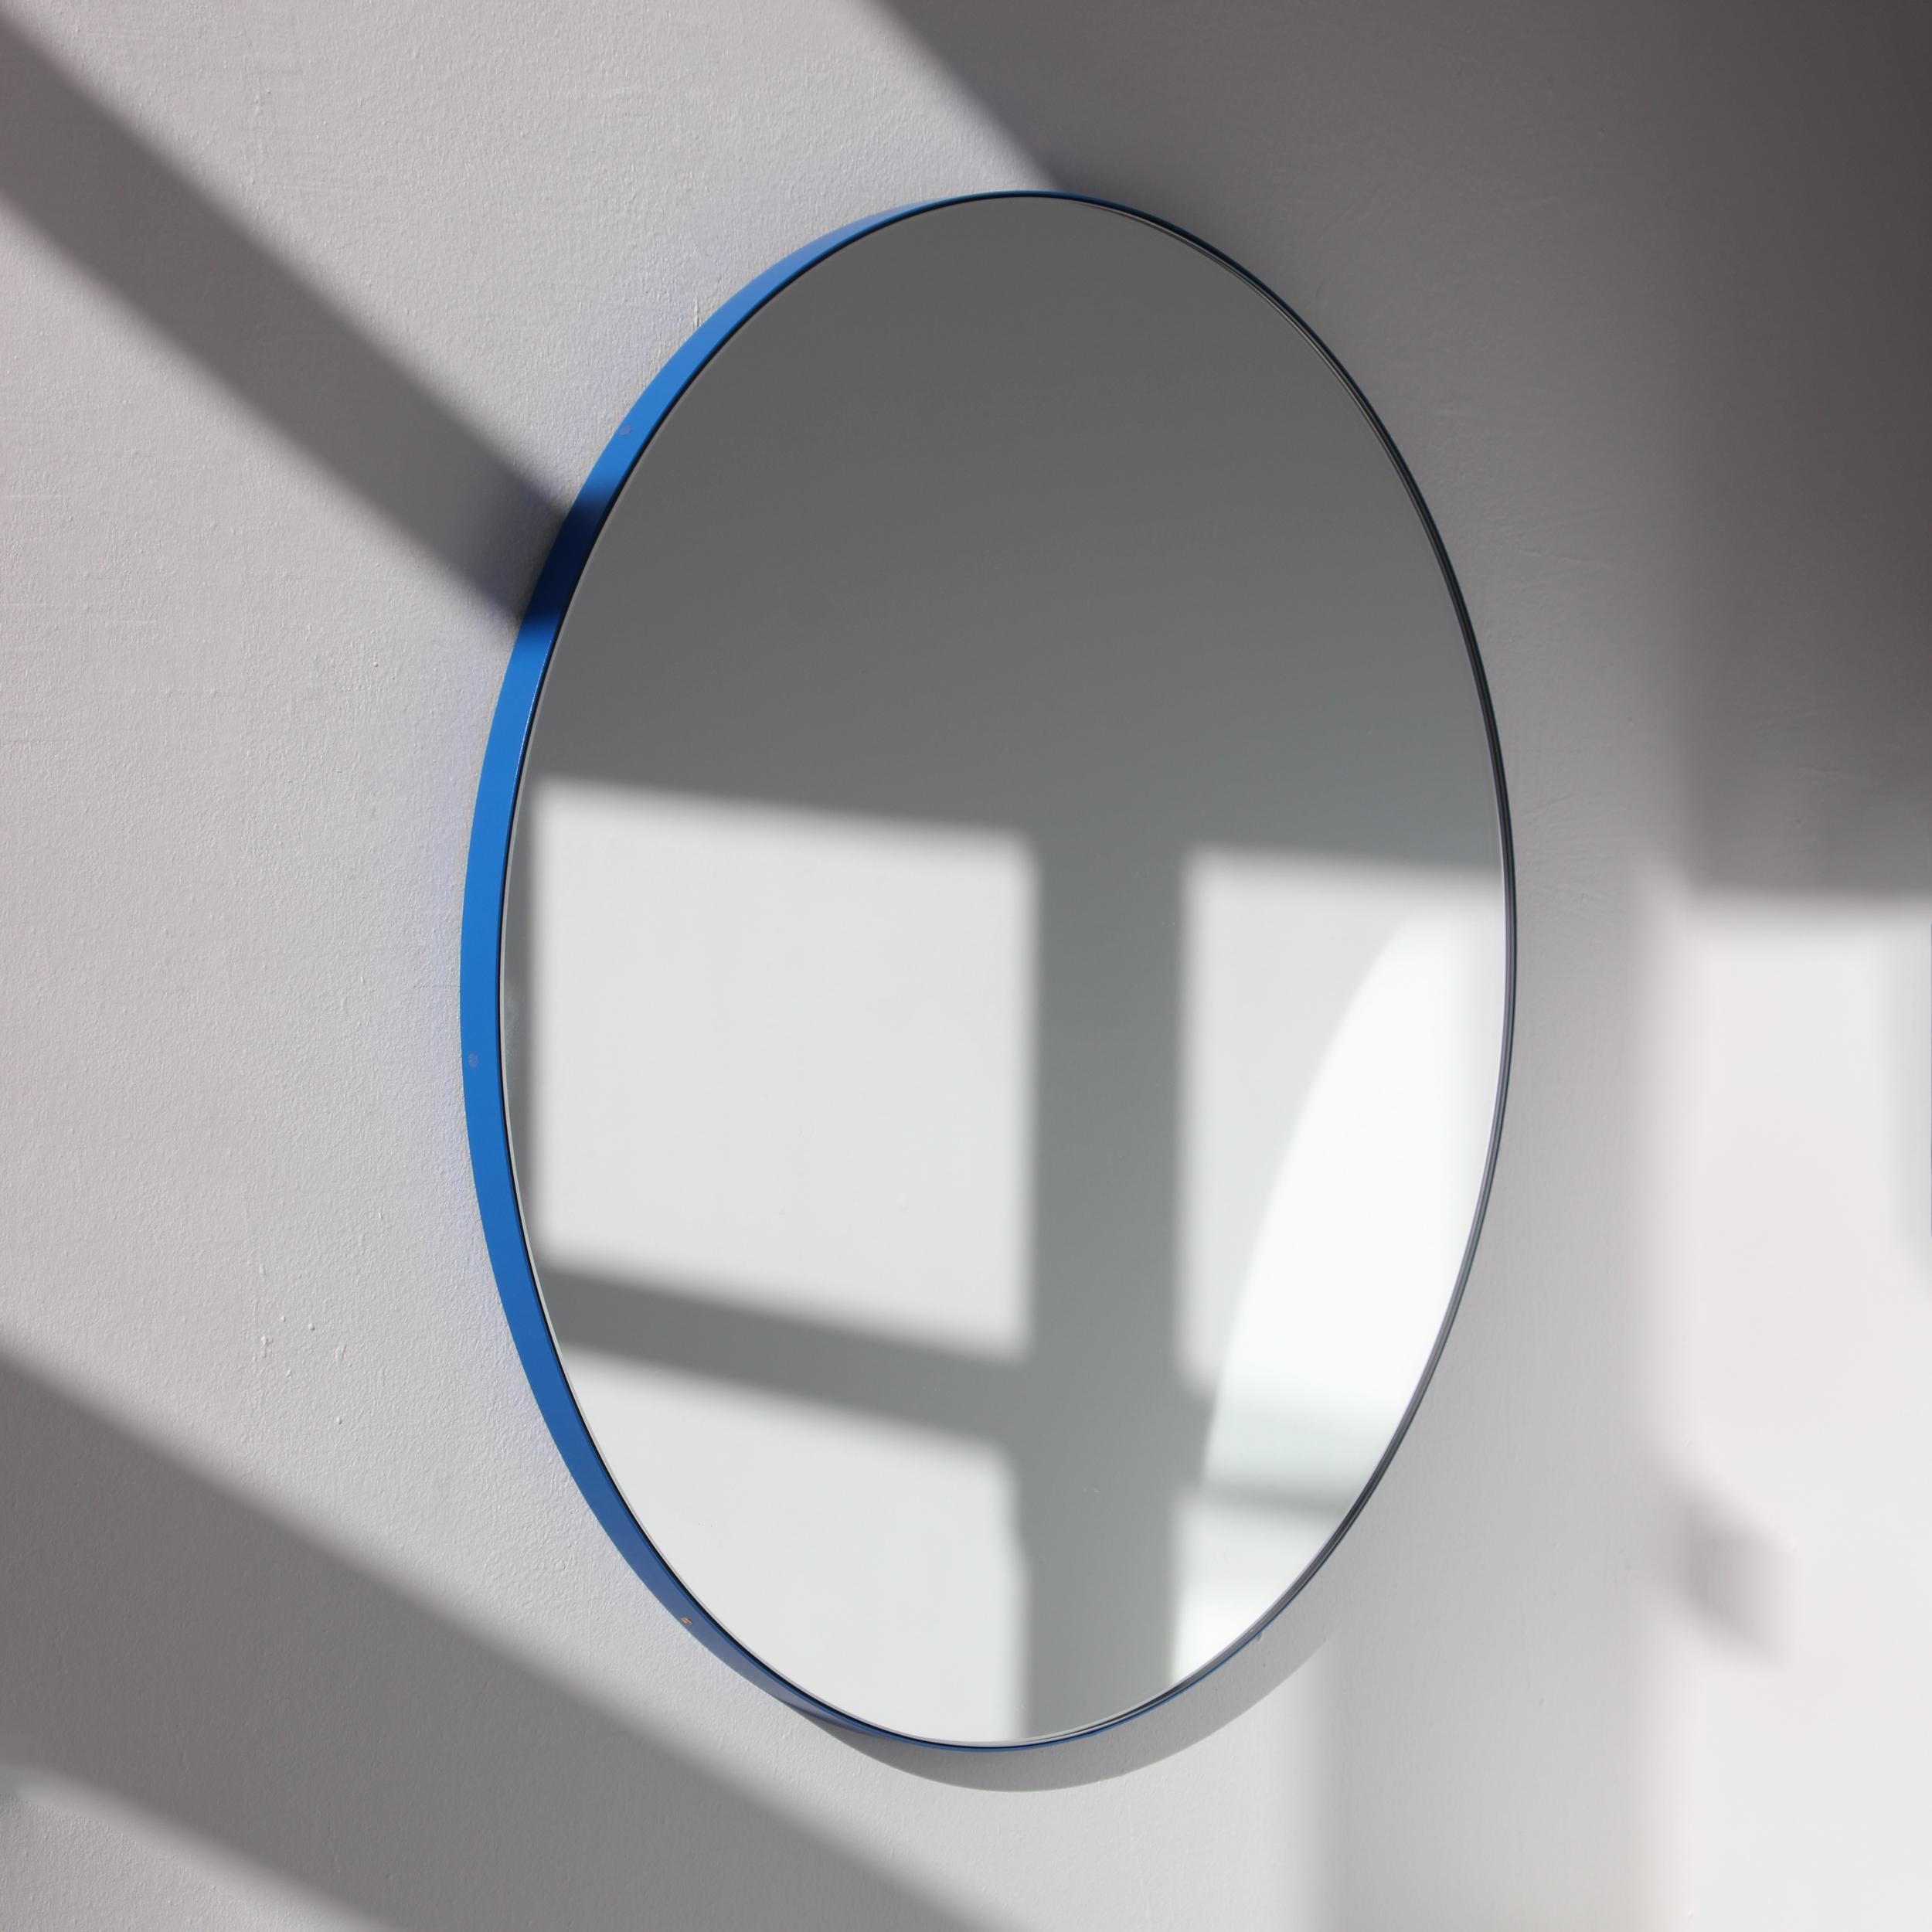 Minimalistischer, runder Spiegel mit einem modernen, blau pulverbeschichteten Aluminiumrahmen. Entworfen und handgefertigt in London, UK.

Die mittelgroßen, großen und extragroßen Spiegel (60, 80 und 100 cm) sind mit einem ausgeklügelten System von